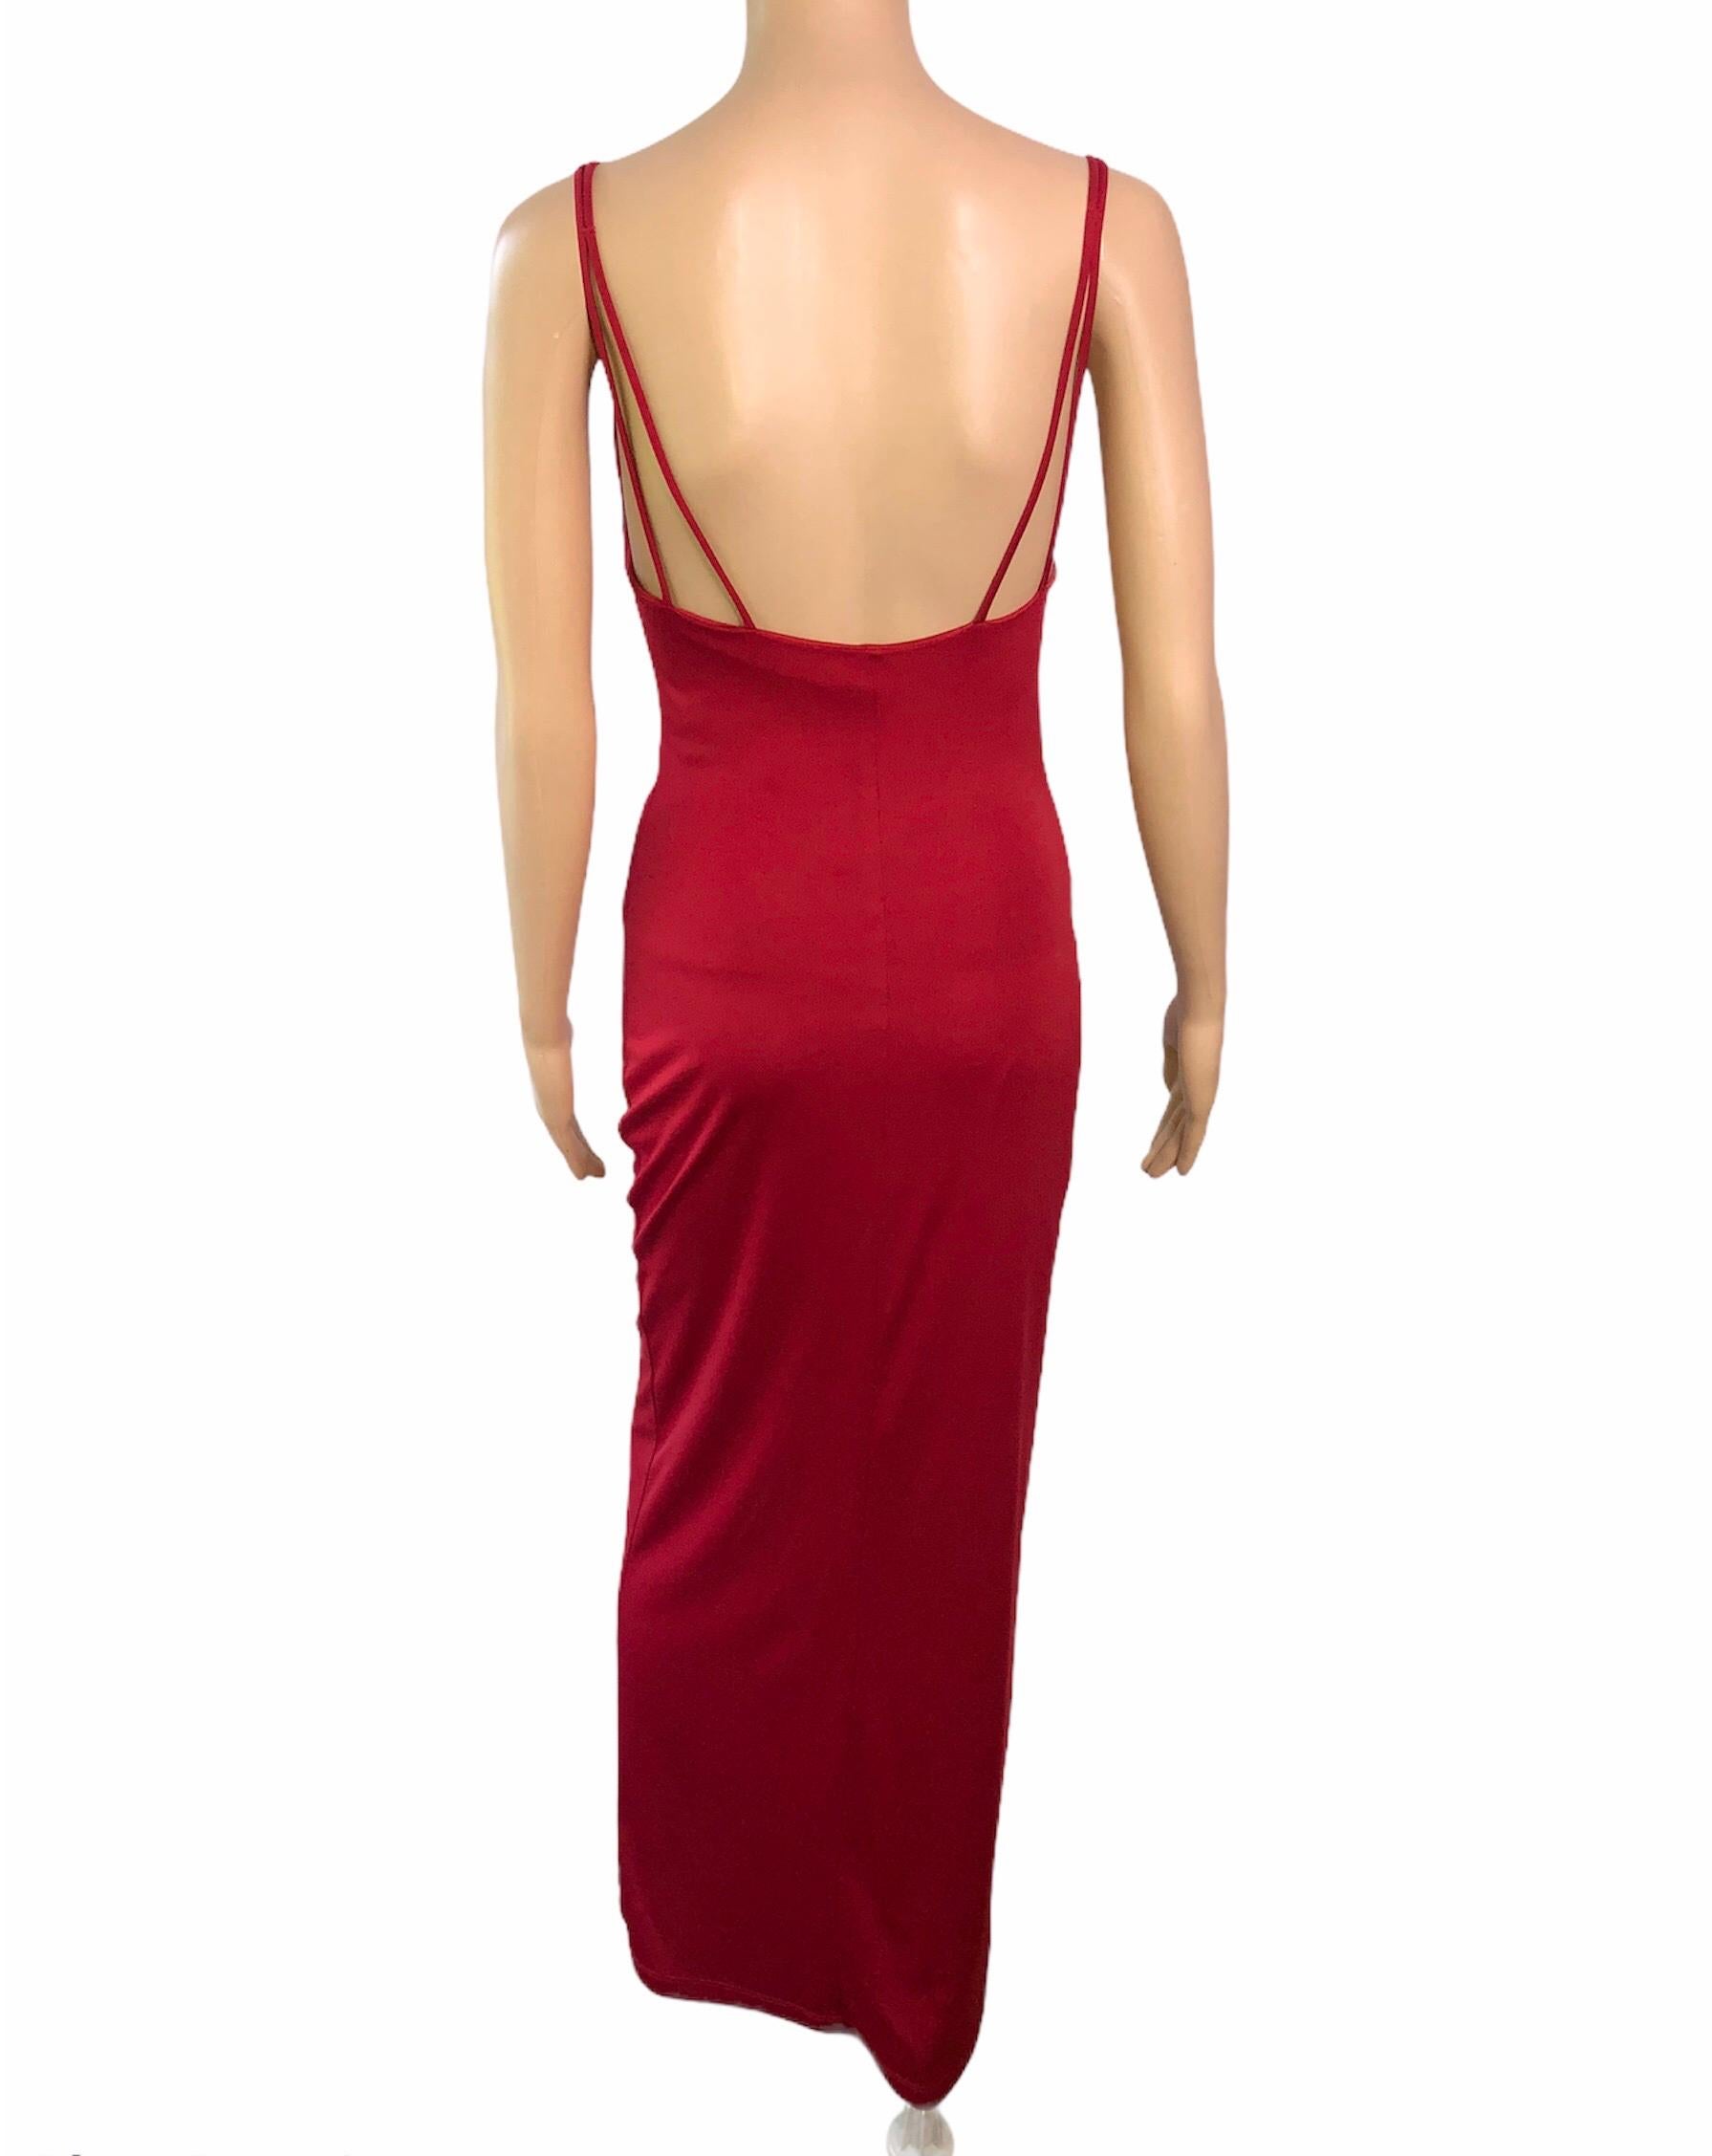 Gianni Versace 1990's Vintage Embelli Sheer Panel Red Evening Dress Gown

La robe de soirée rouge de Gianni Versace présente un panneau frontal transparent, des embellissements et une fente haute sur le devant. Veuillez noter que les étiquettes de